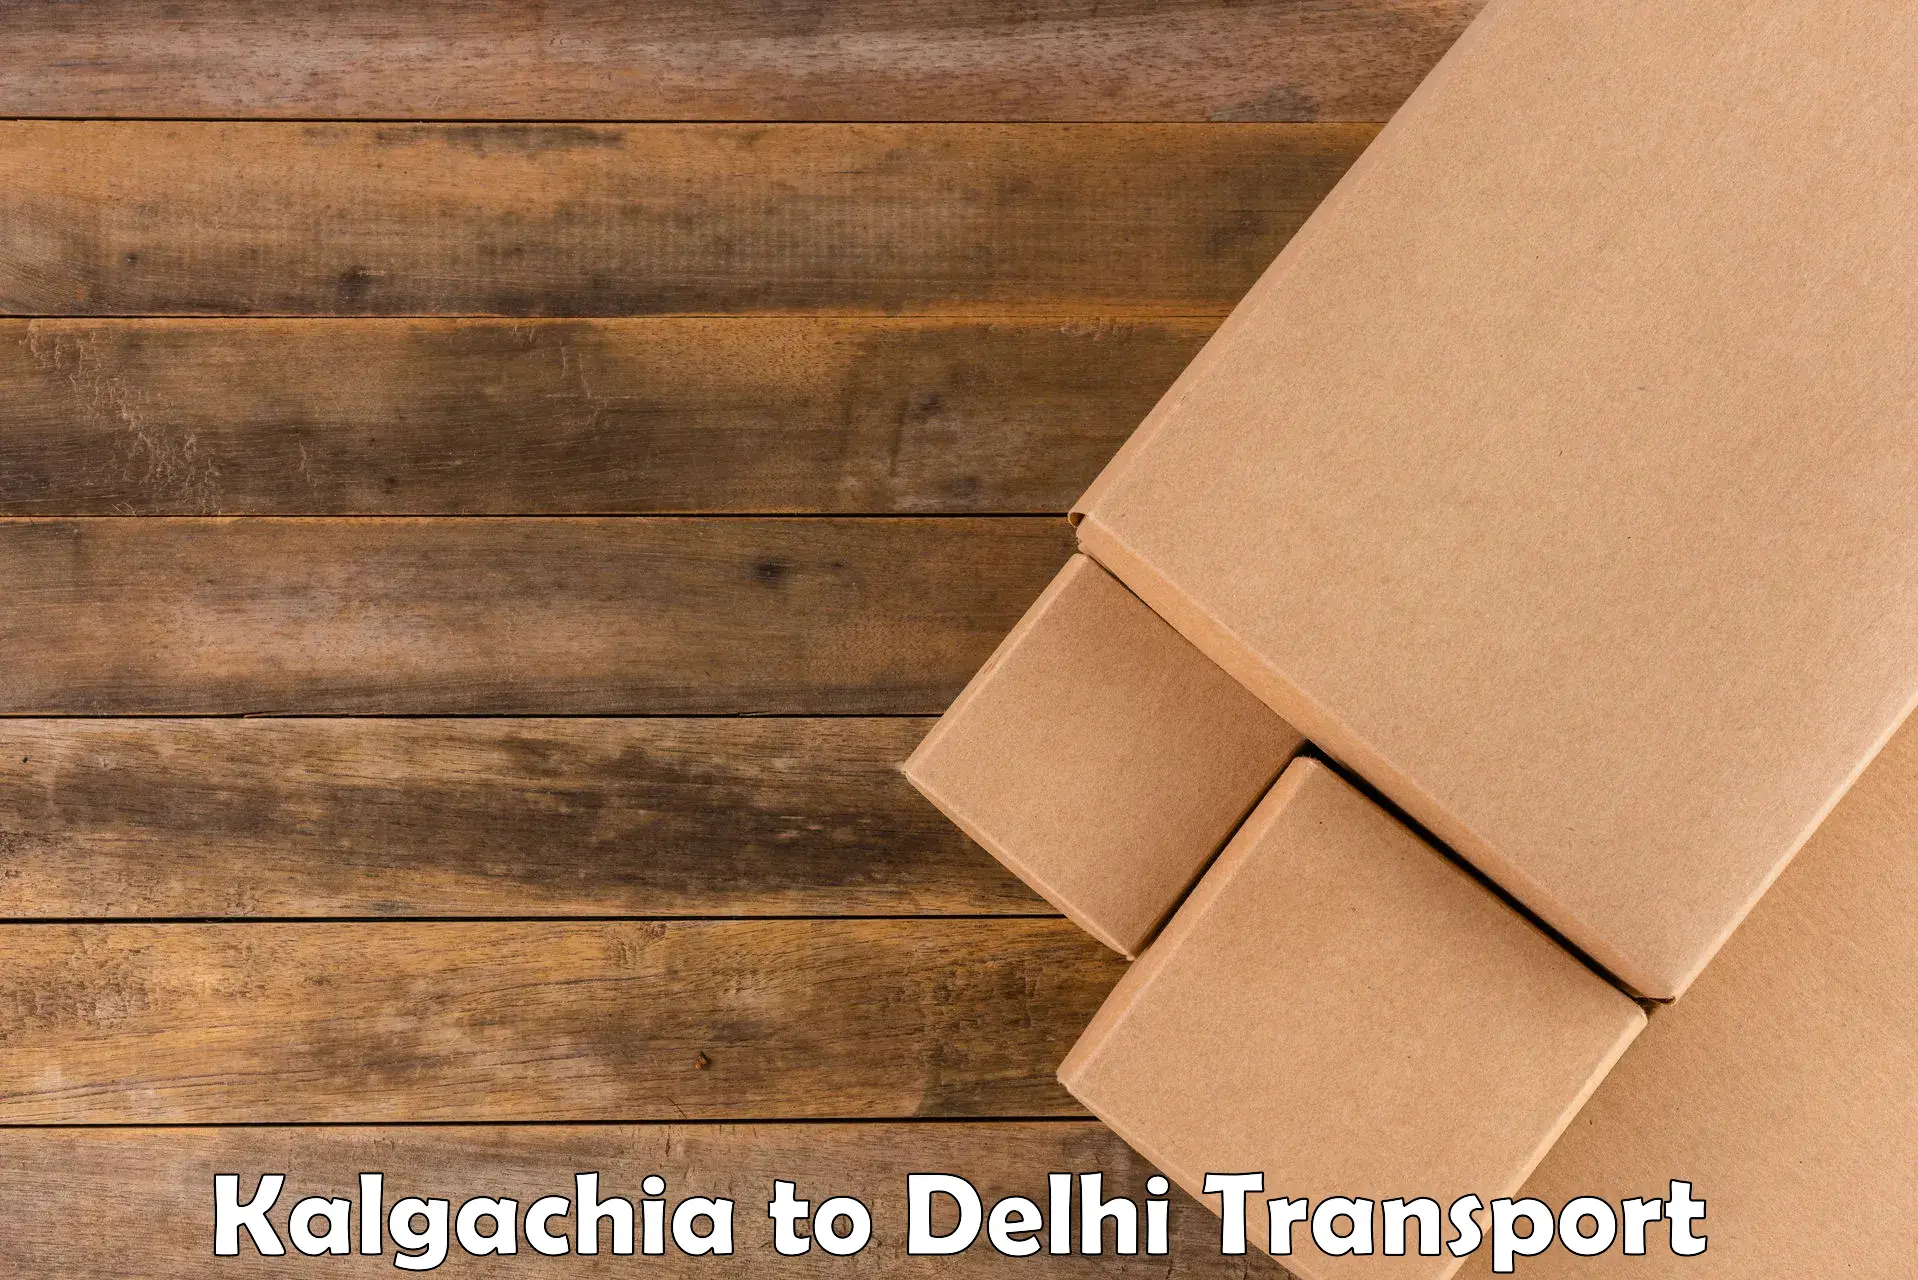 Luggage transport services Kalgachia to NCR